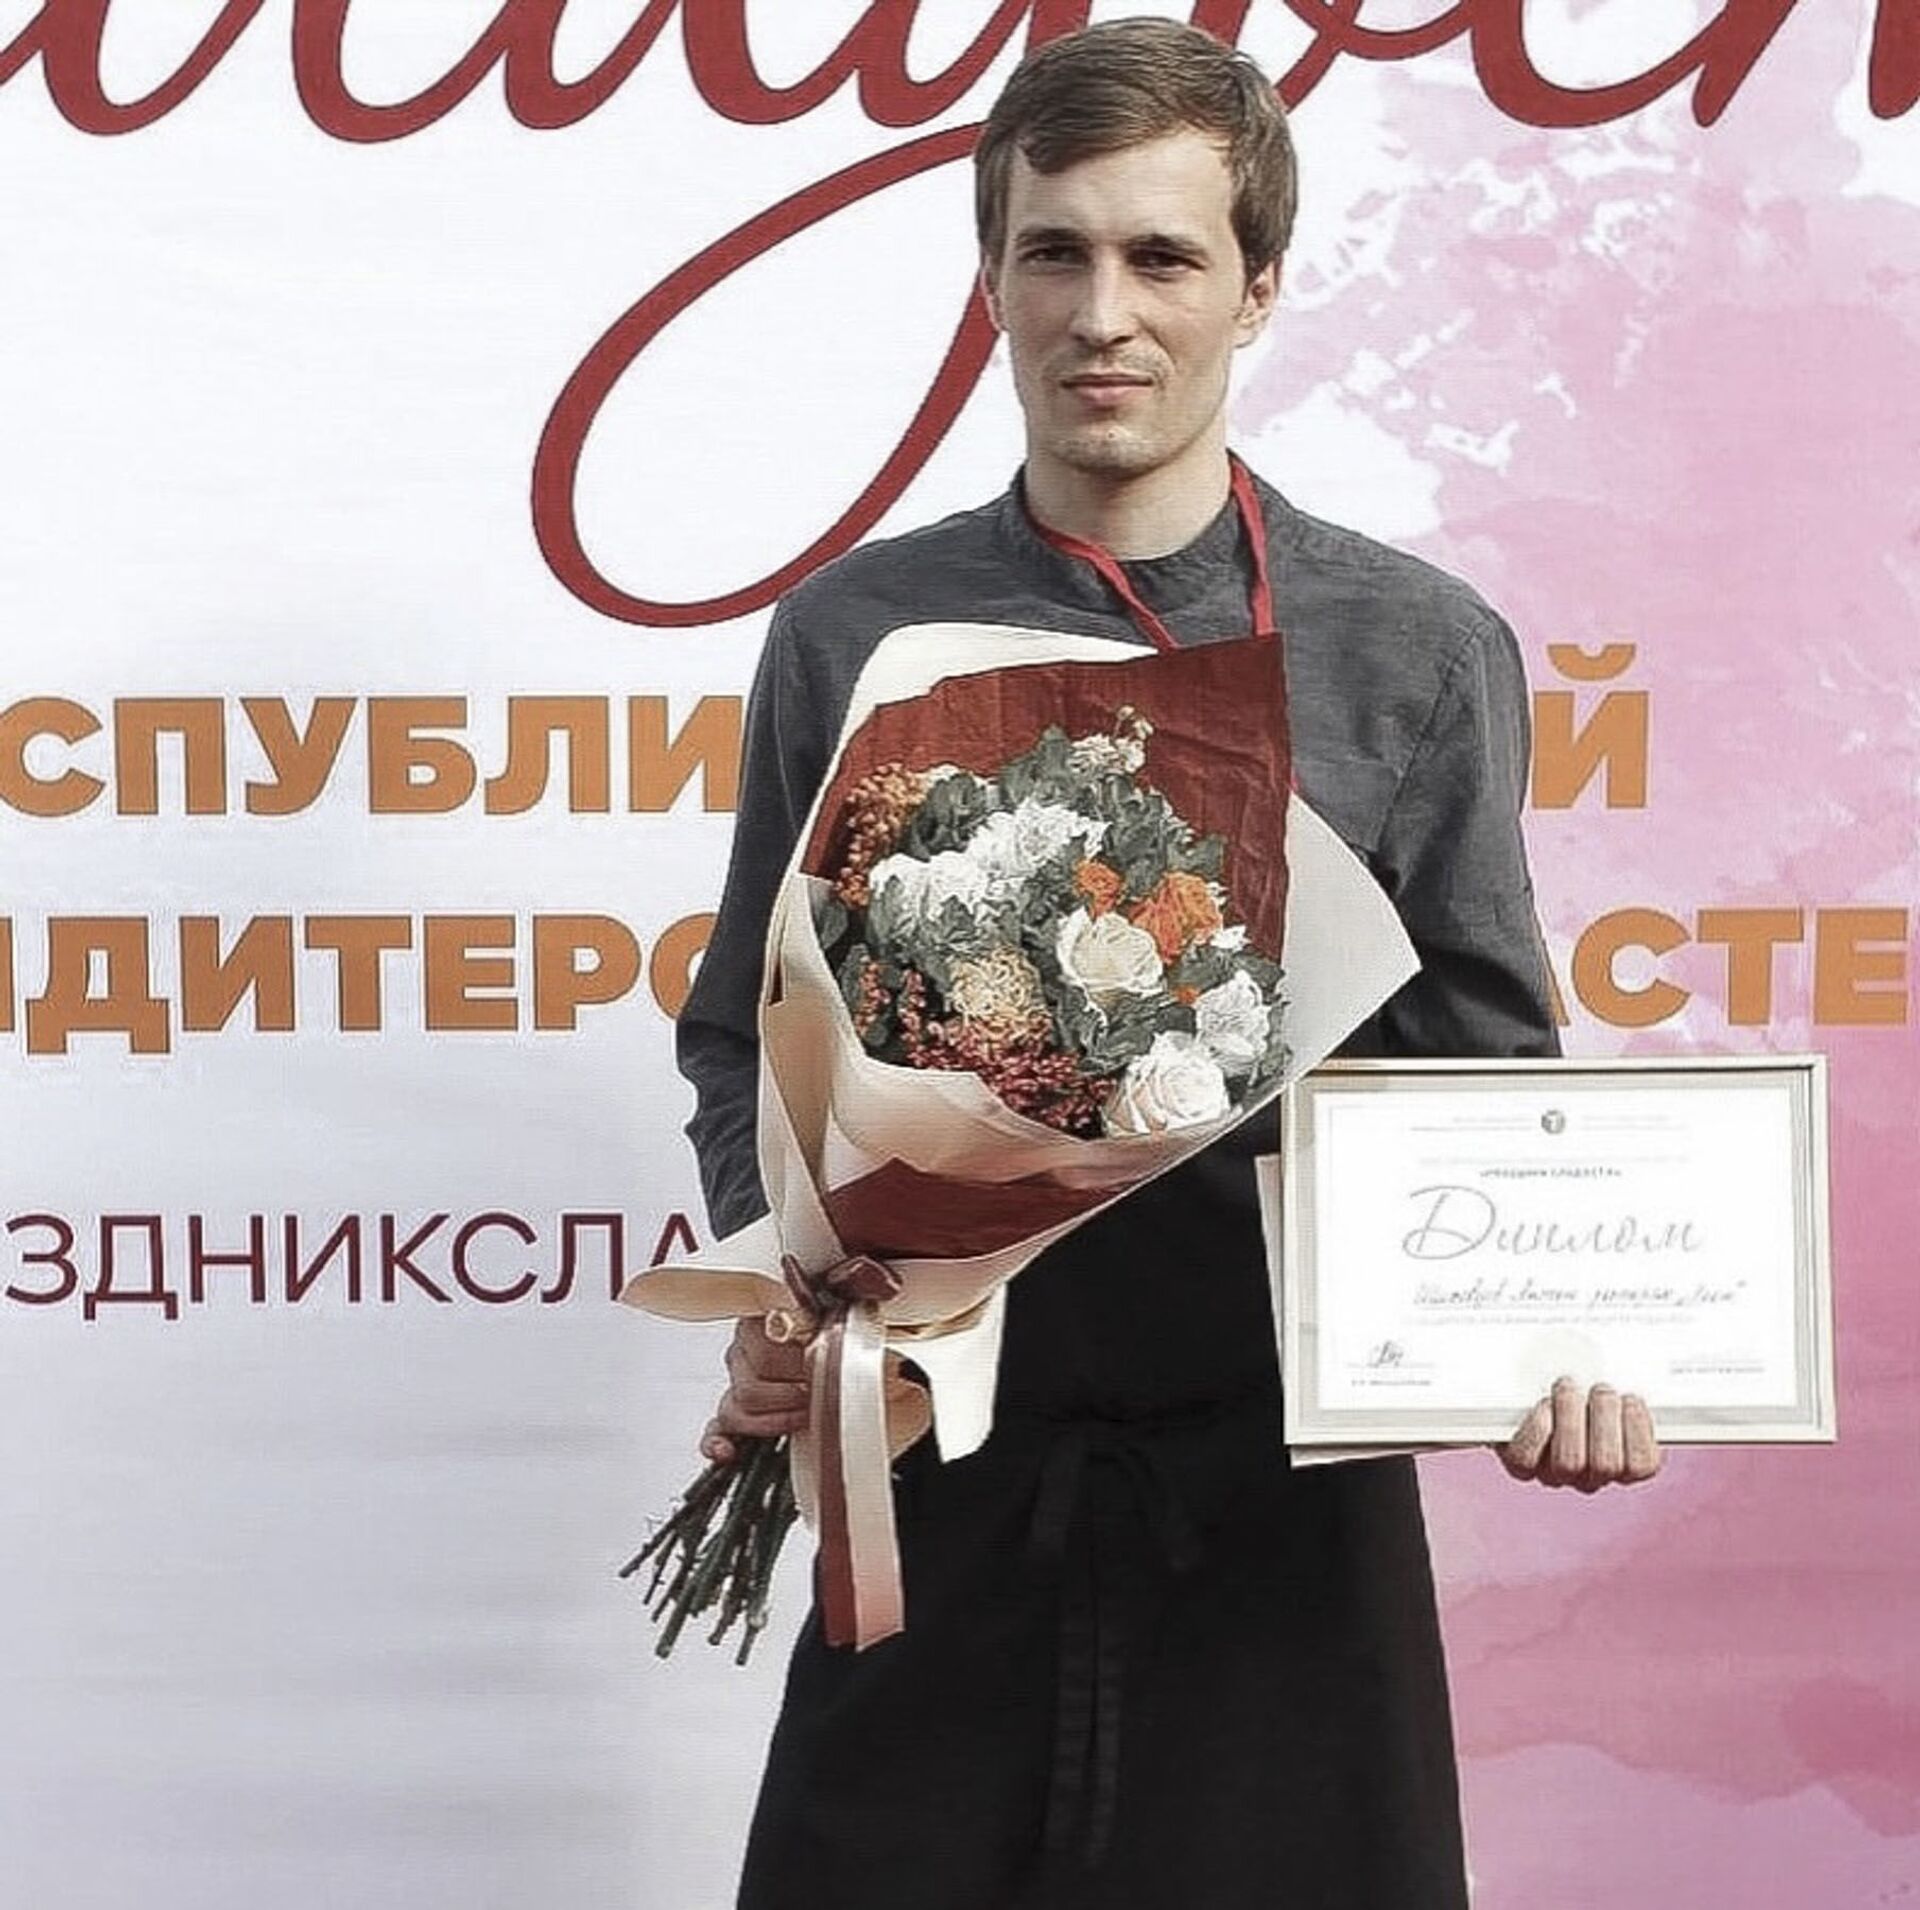 Молодой шеф: как Антон Шиховцов стал популярным поваром в Абхазии  - Sputnik Абхазия, 1920, 03.07.2021